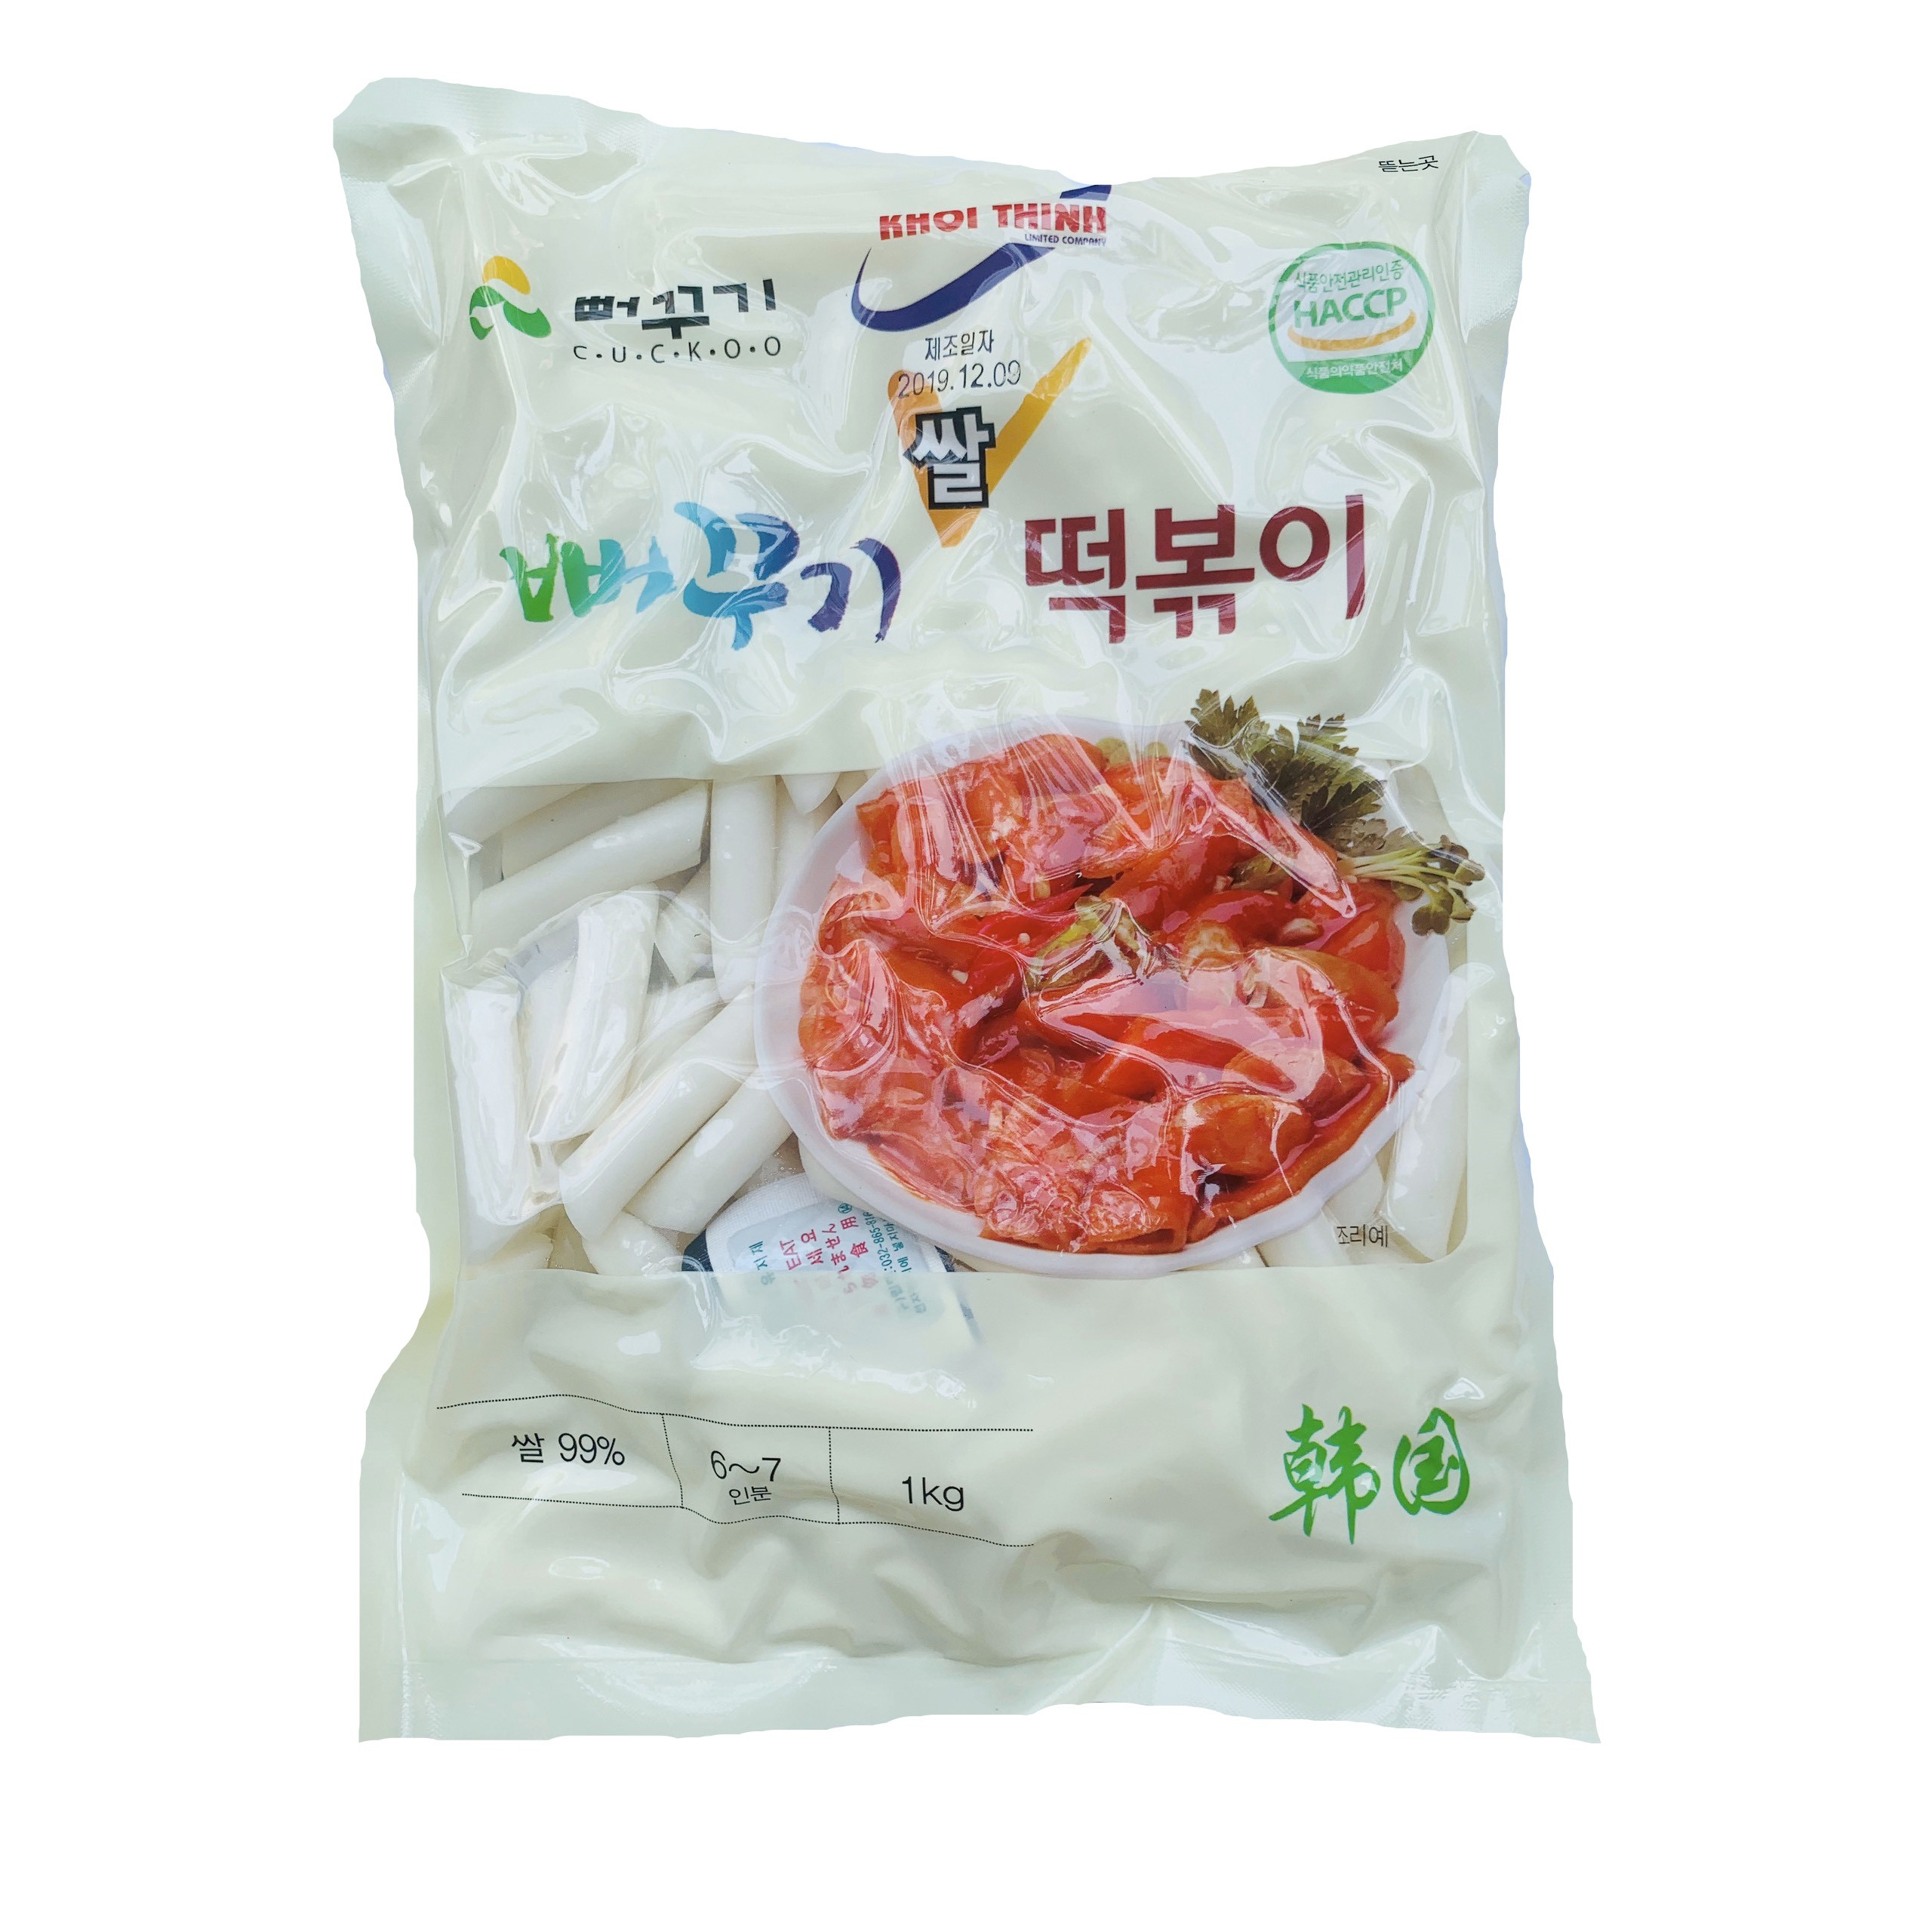 Bánh gạo Topokki Hàn Quốc – Cuckoo